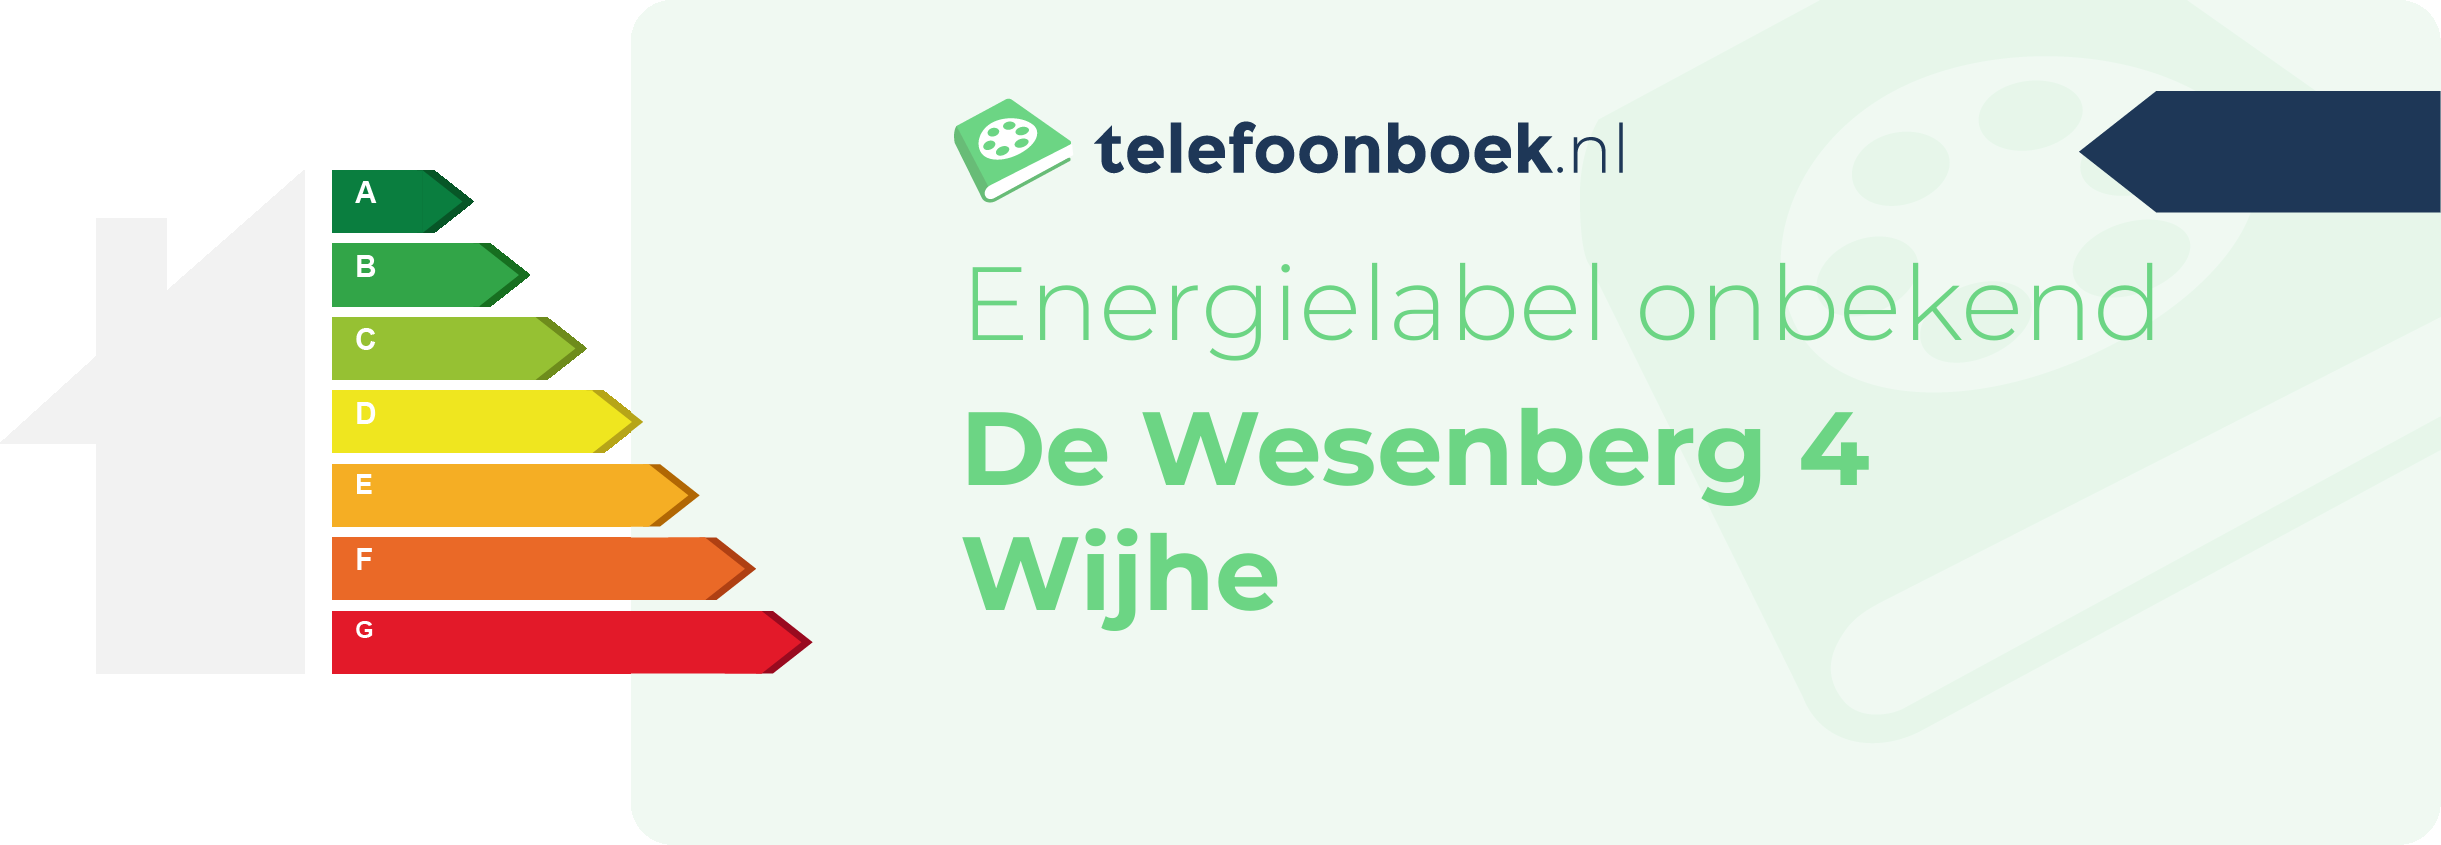 Energielabel De Wesenberg 4 Wijhe